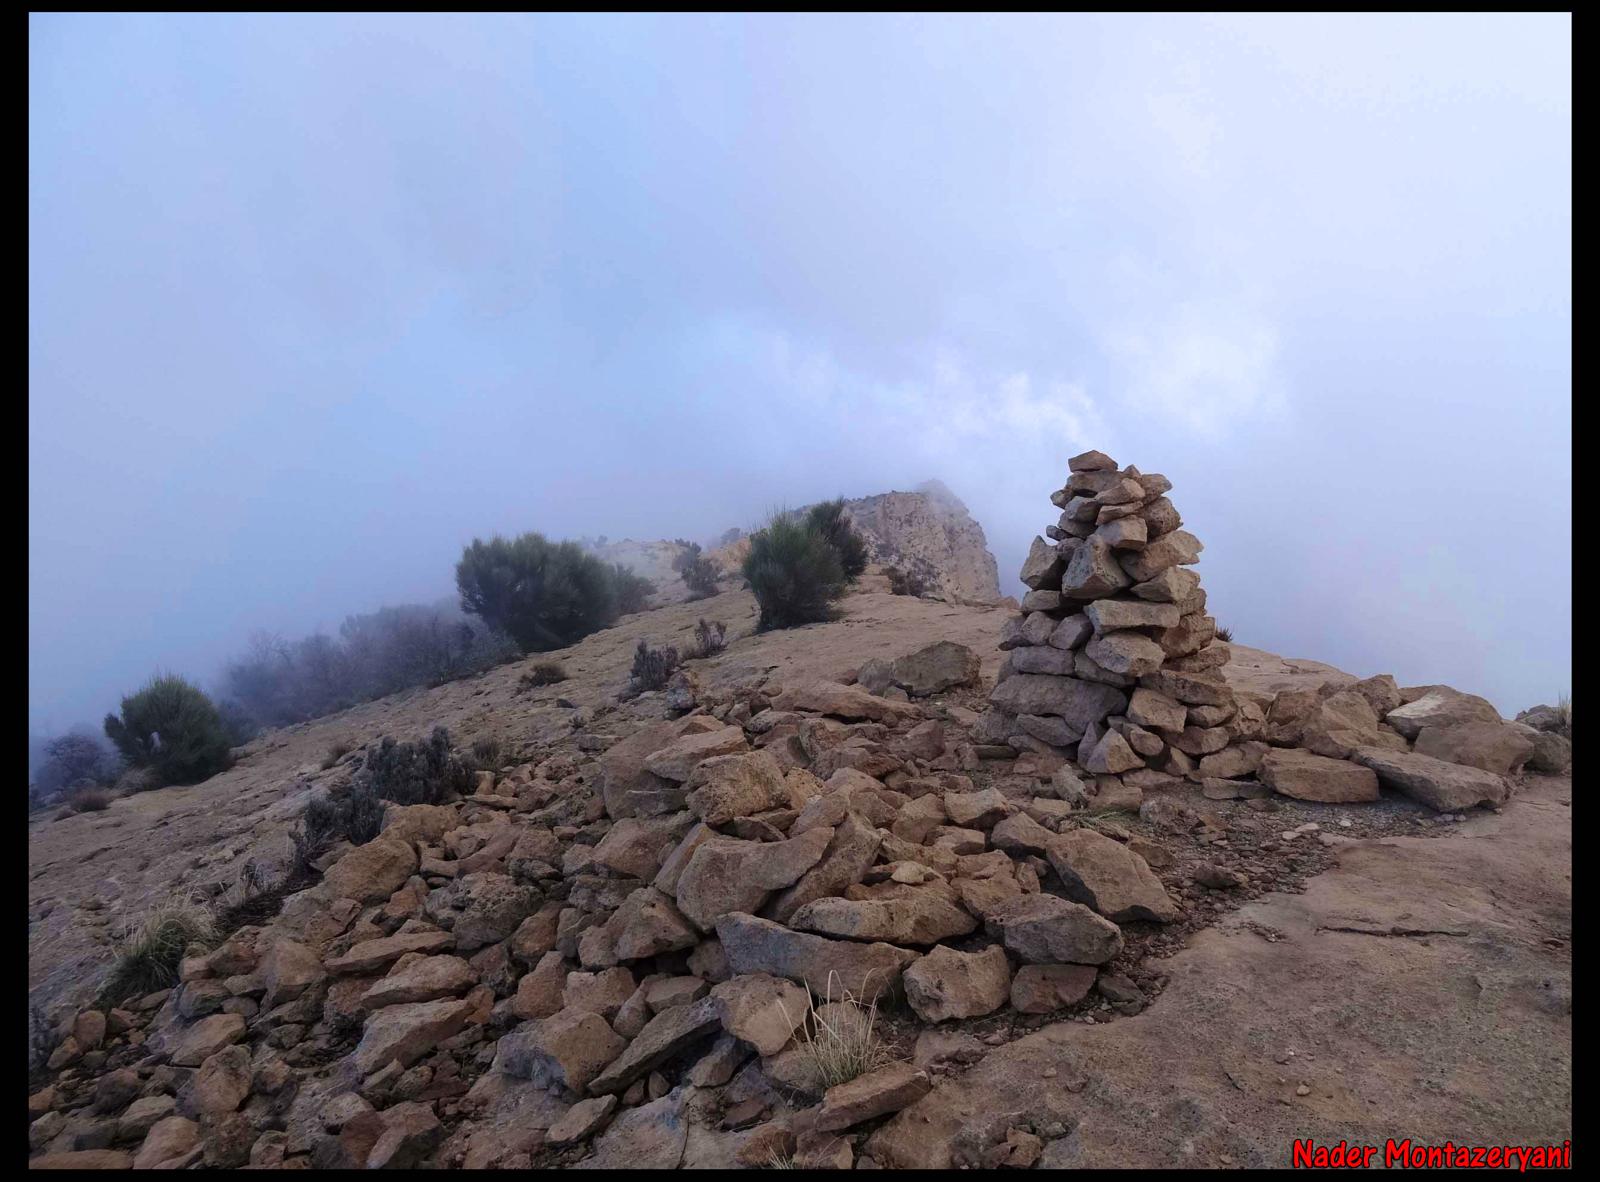 قله دوم بیرمی, Second Peak of Beyrami